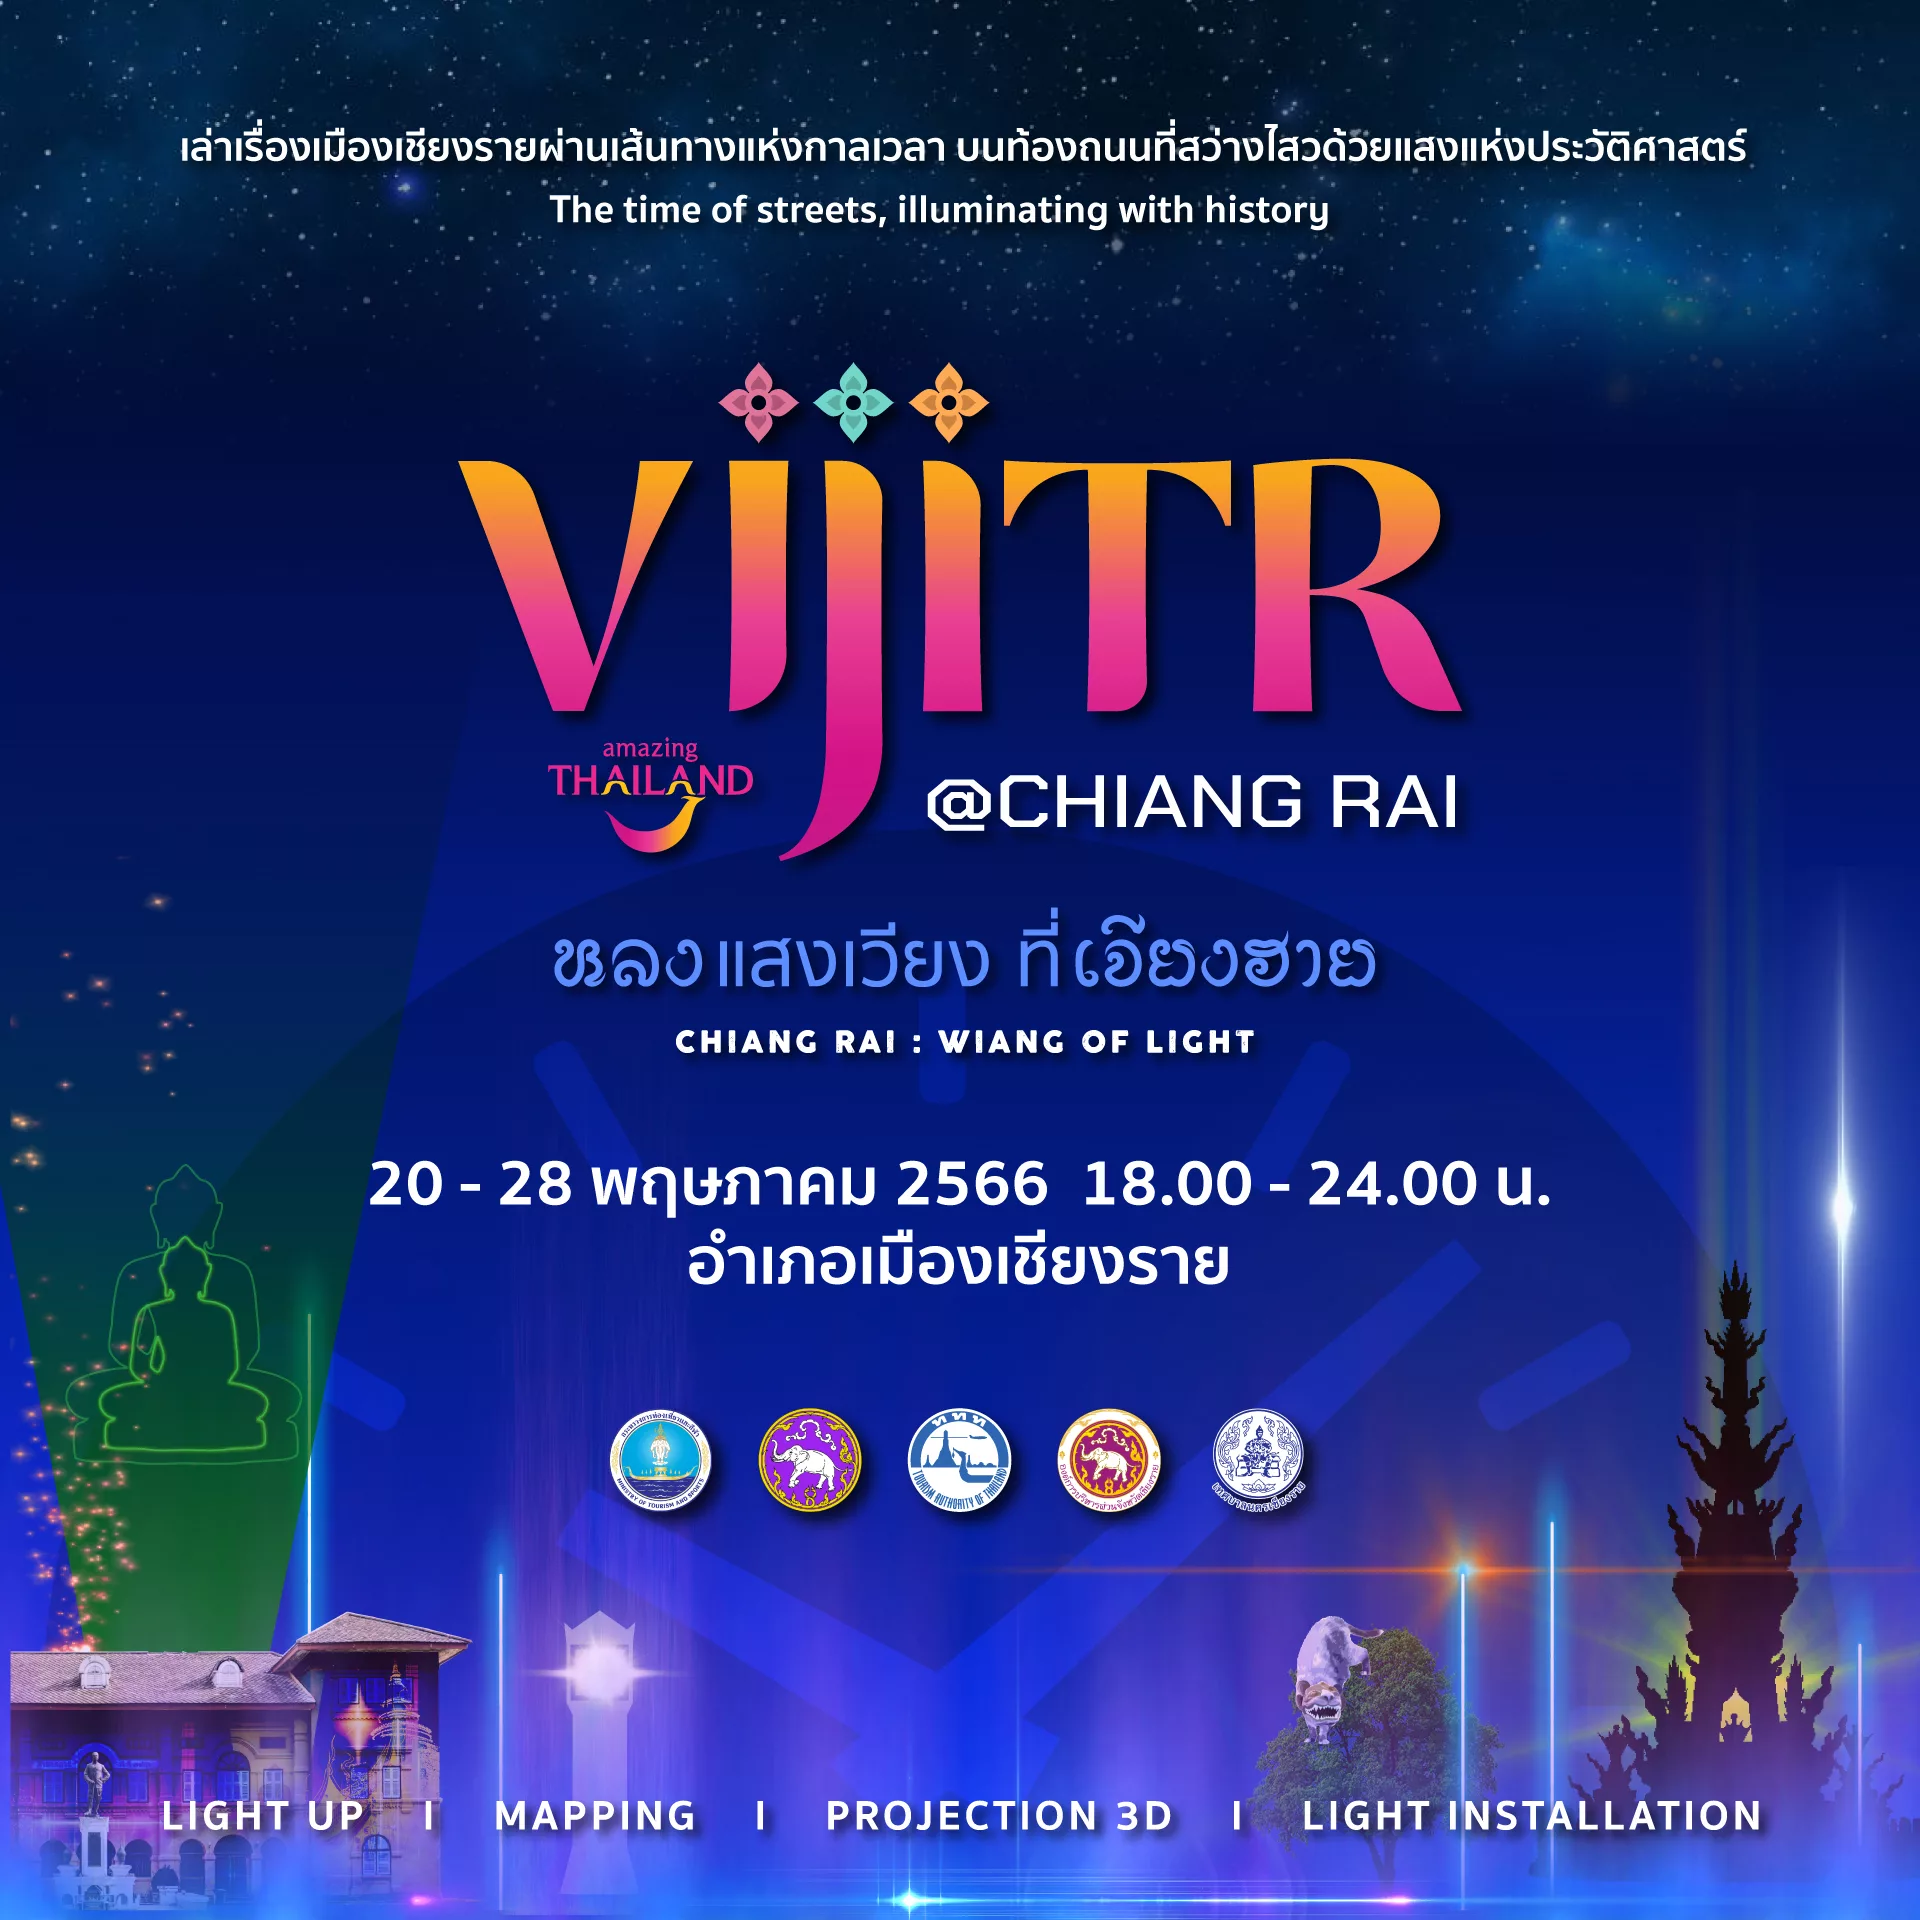 ชวนเที่ยวเชียงราย กับงาน VIJITR Chiang Rai : Wiang of Life หลงแสงเวียง ที่เจียงฮาย